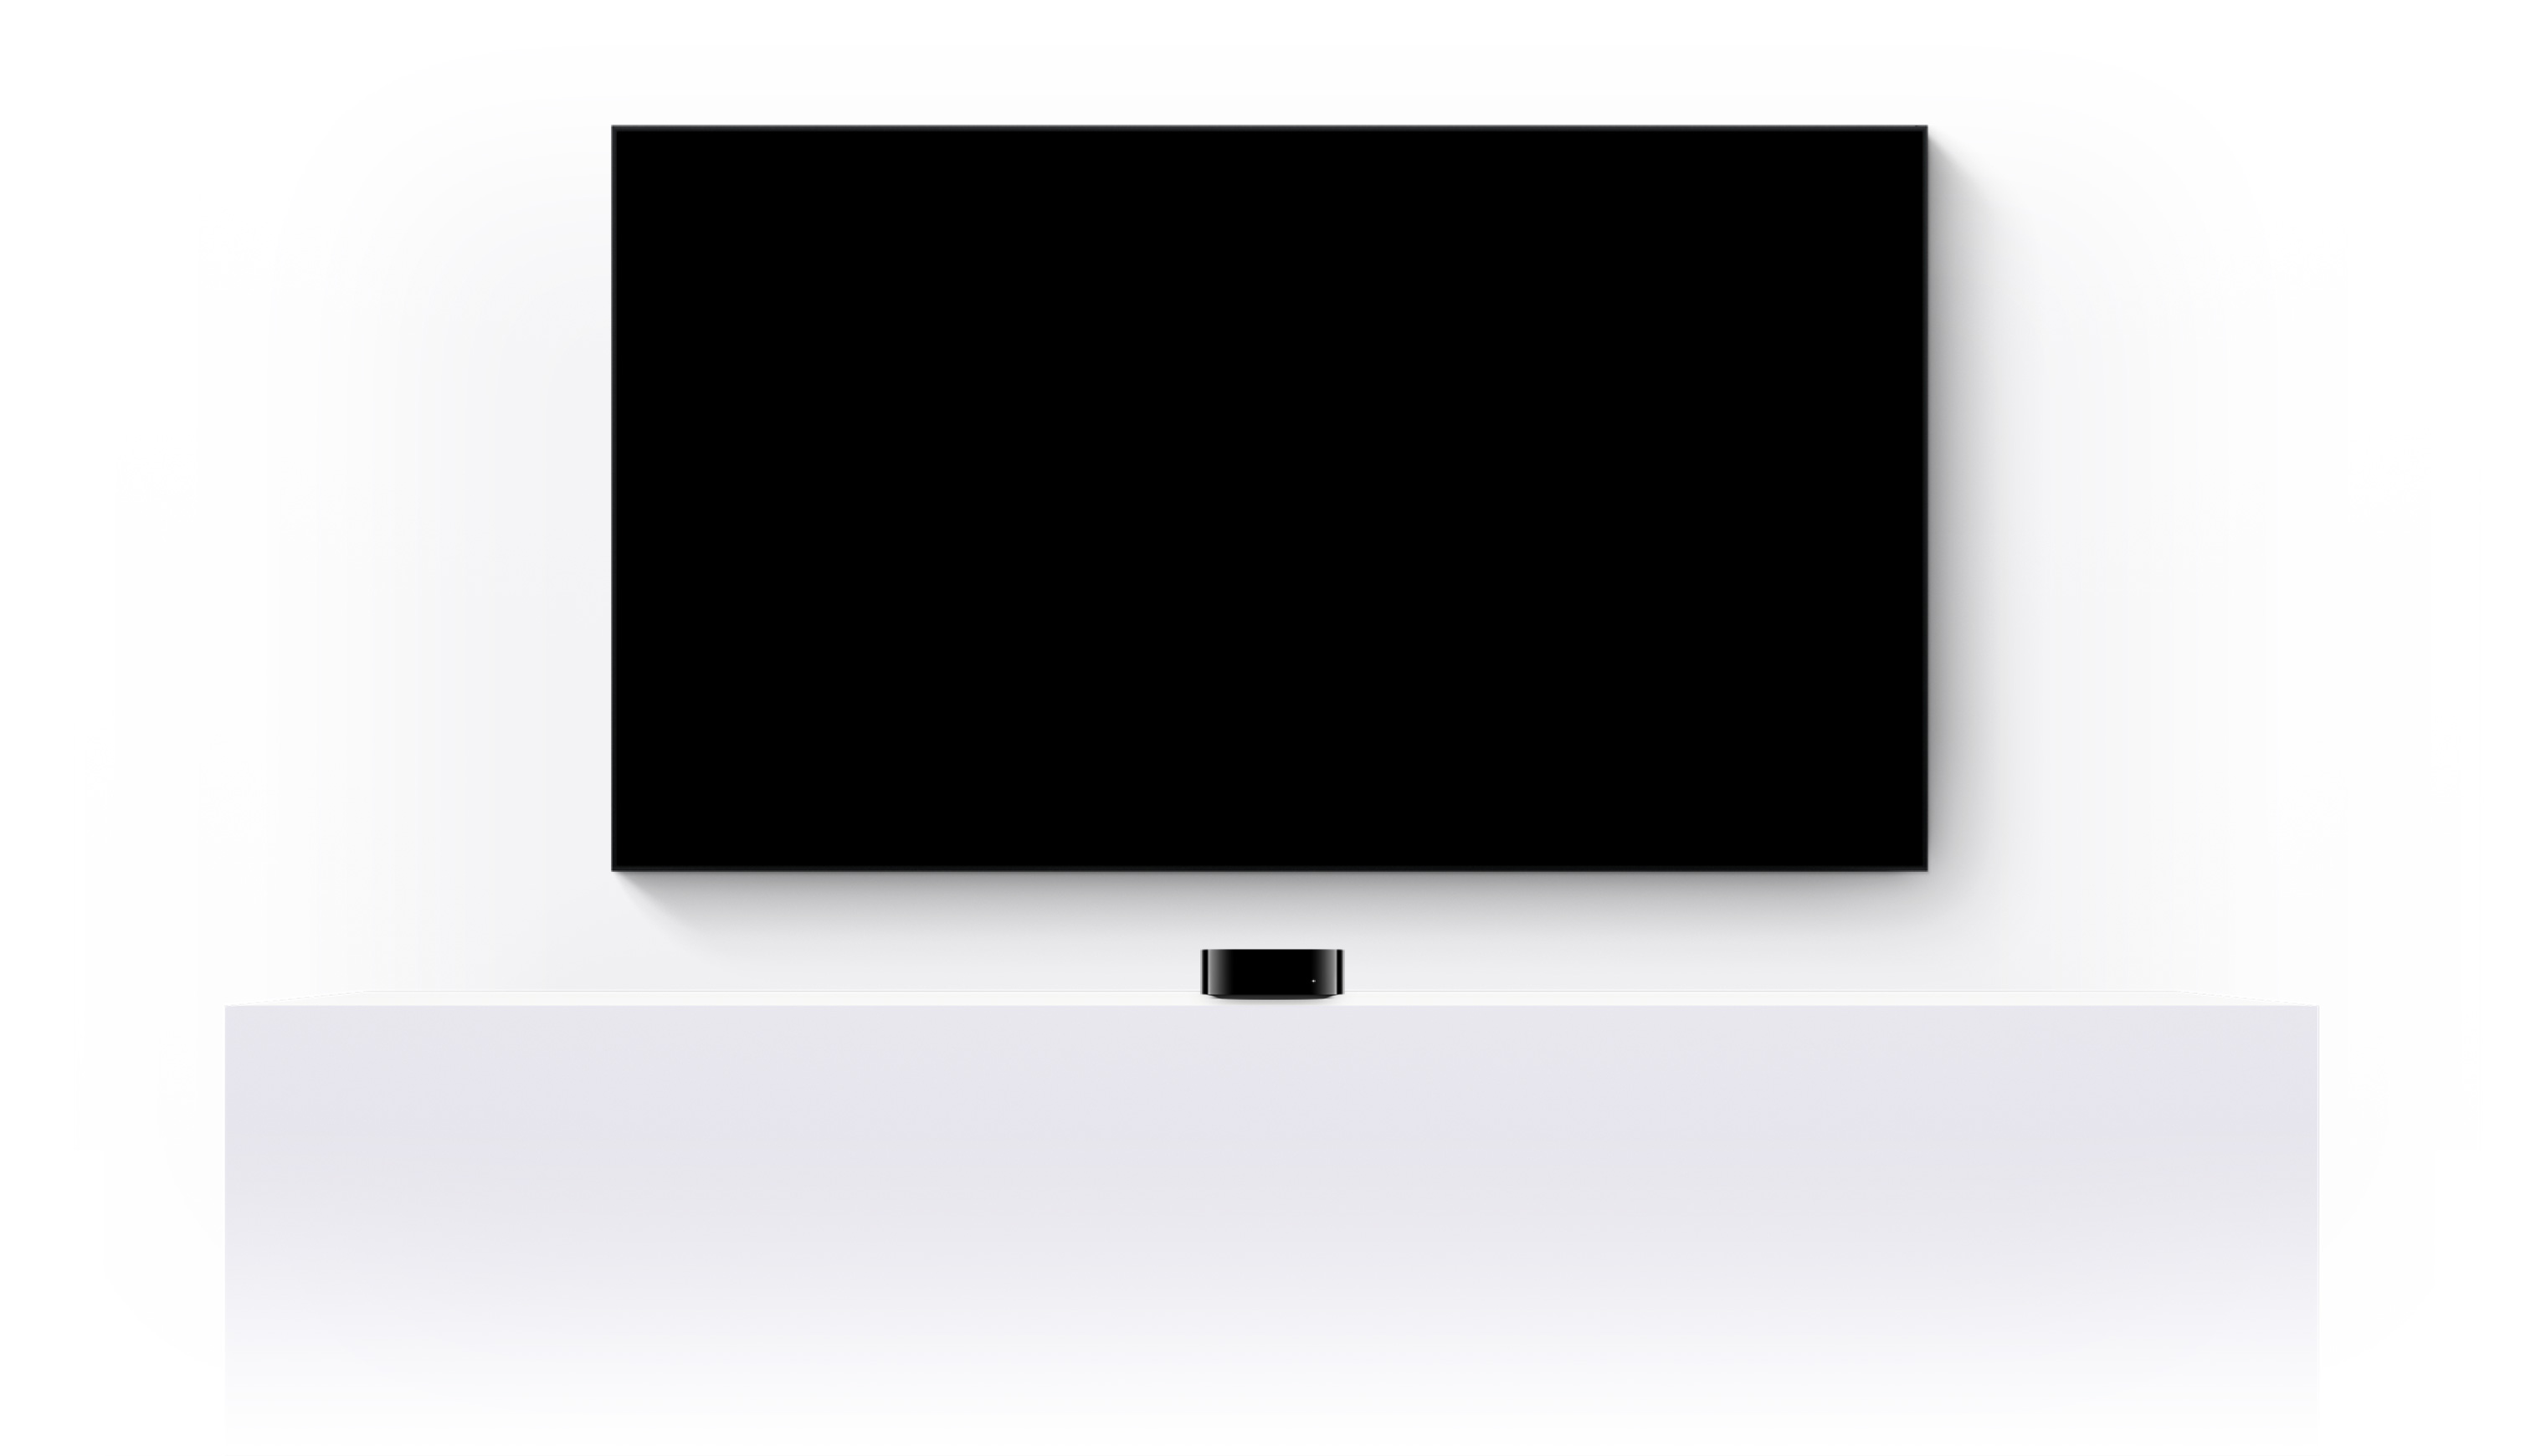 Uma Apple TV 4K e uma TV de tela plana mostram um trailer editado de diversos filmes e séries do Apple TV+.